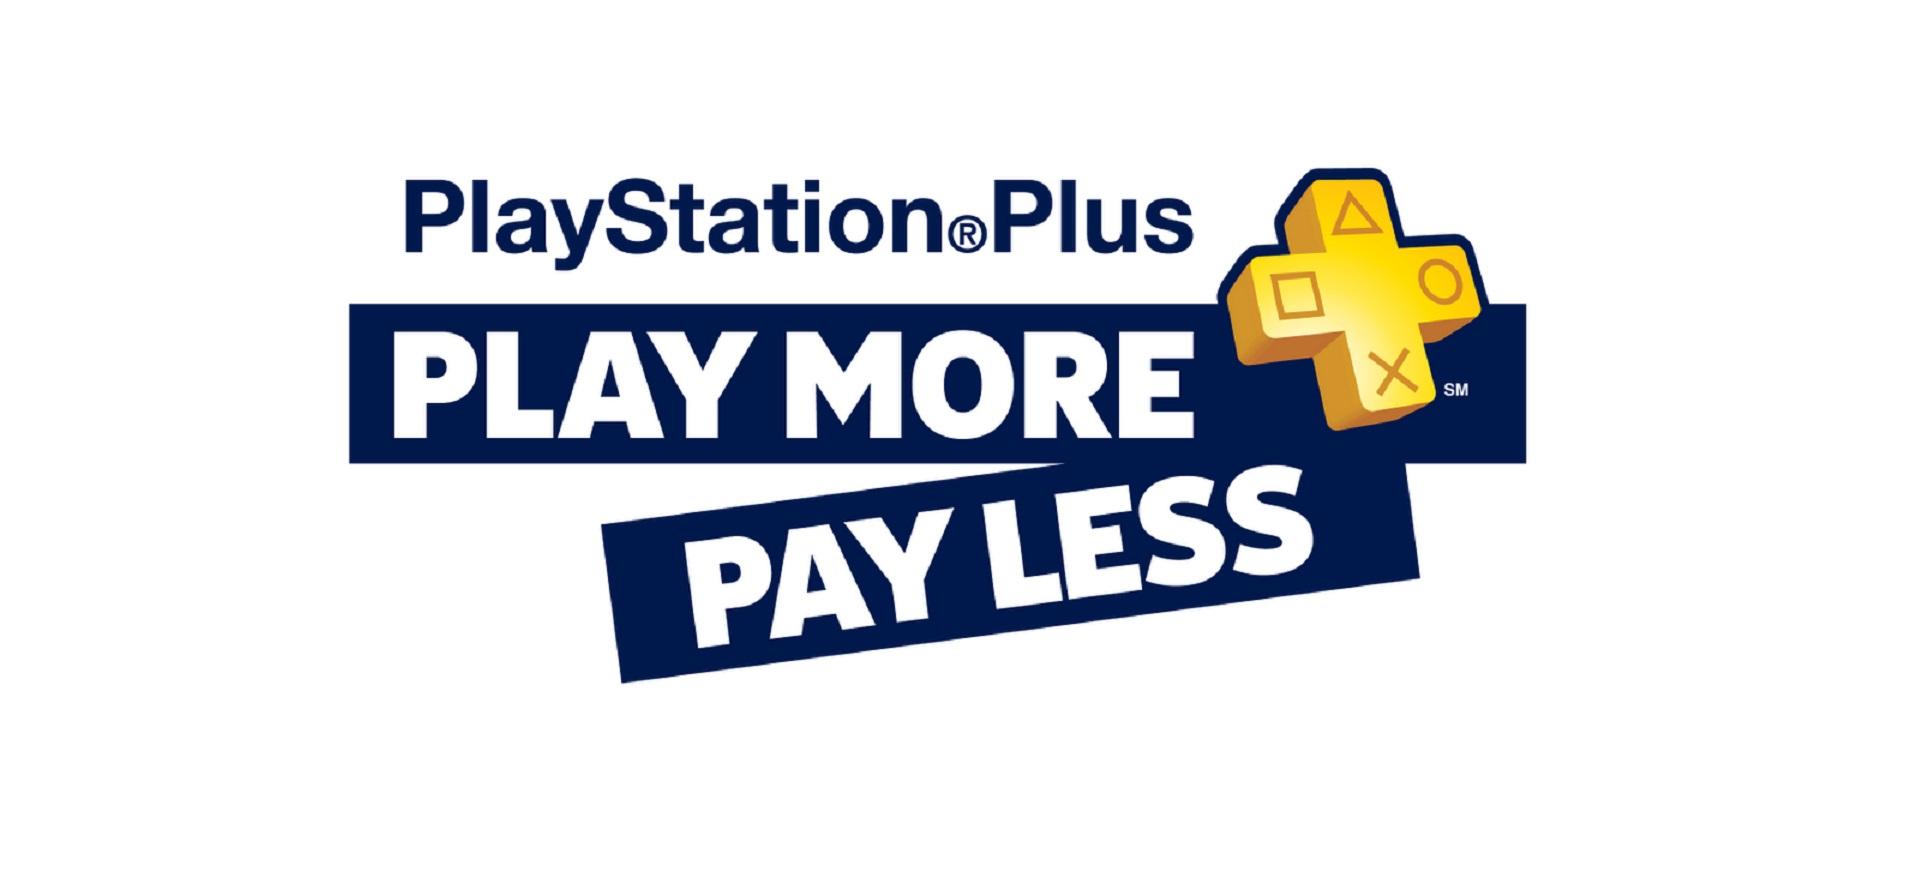 Sony công bố danh sách game PS Plus miễn phí tháng 2/2016